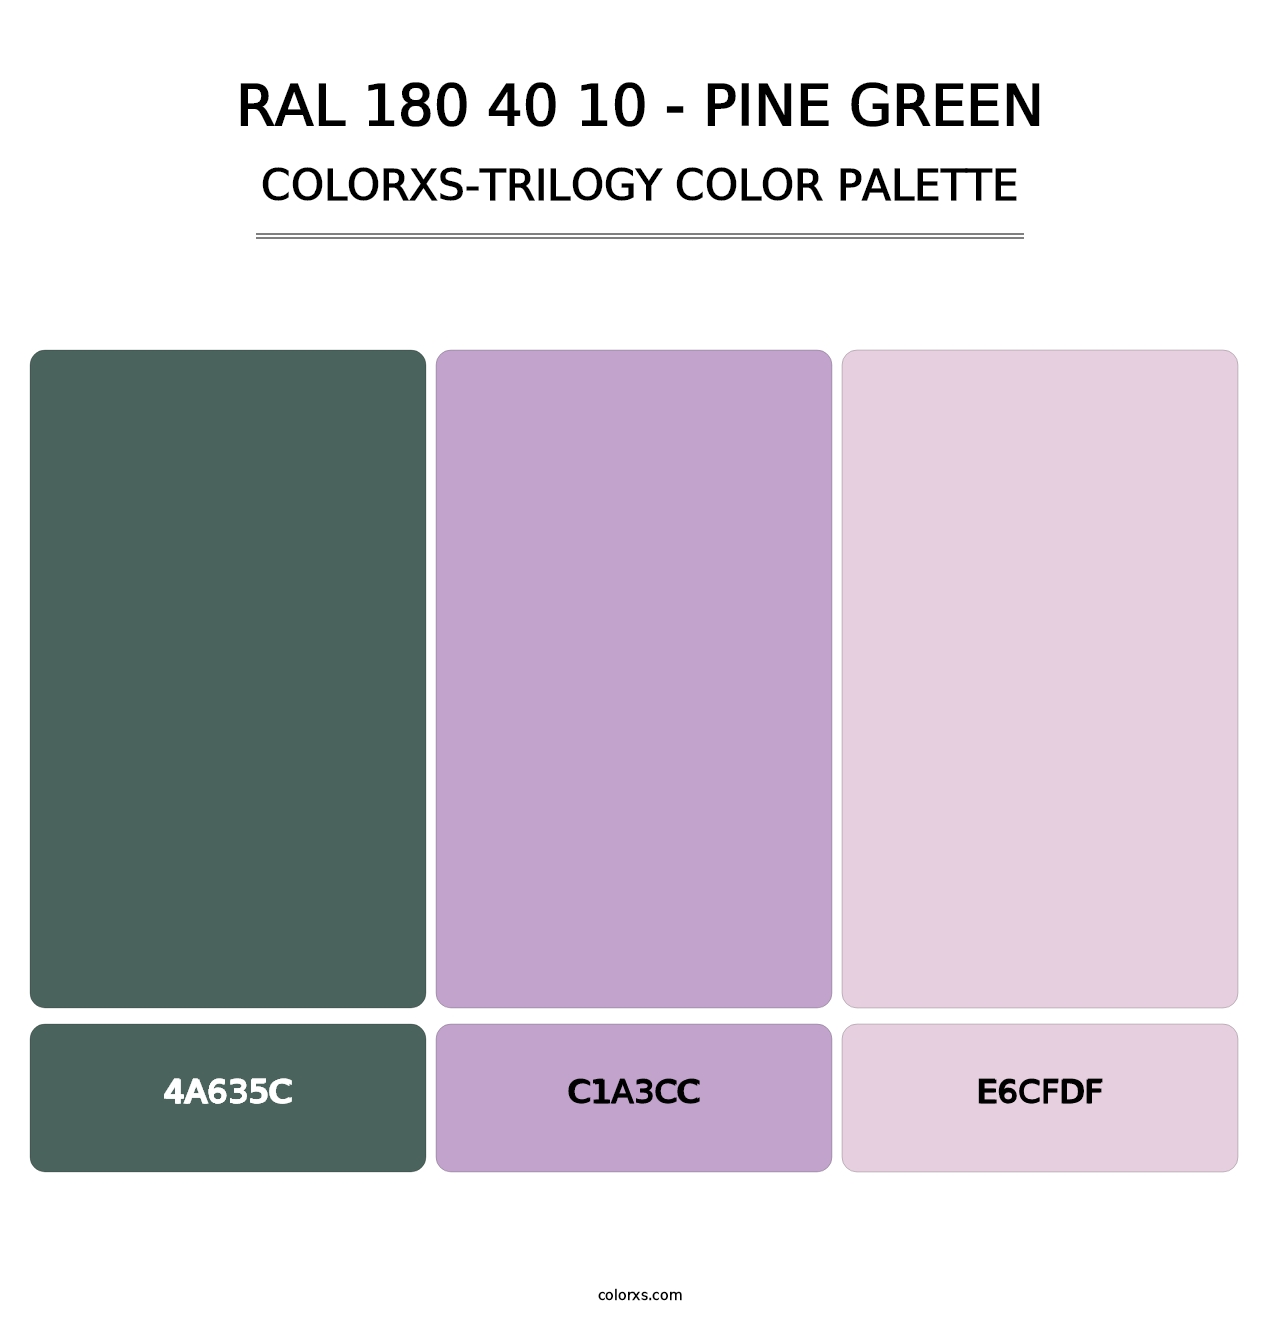 RAL 180 40 10 - Pine Green - Colorxs Trilogy Palette